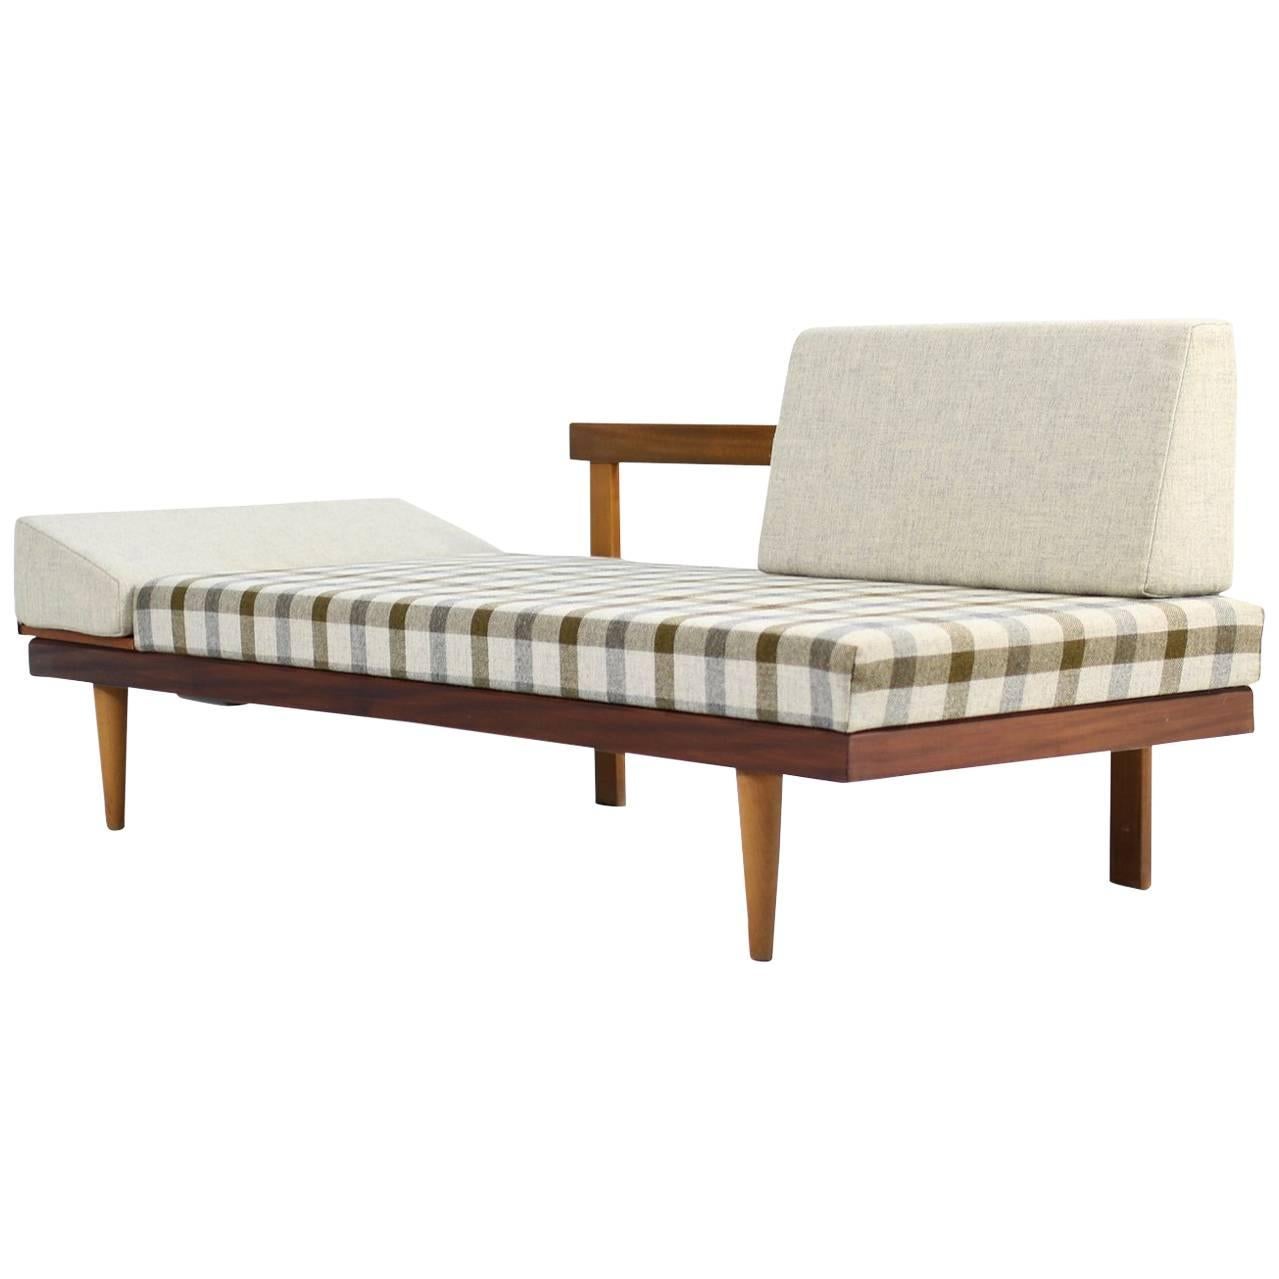 1950s Norwegian Teak & Beechwood Extendable Daybed Svane Møbler Norway Sofa #1